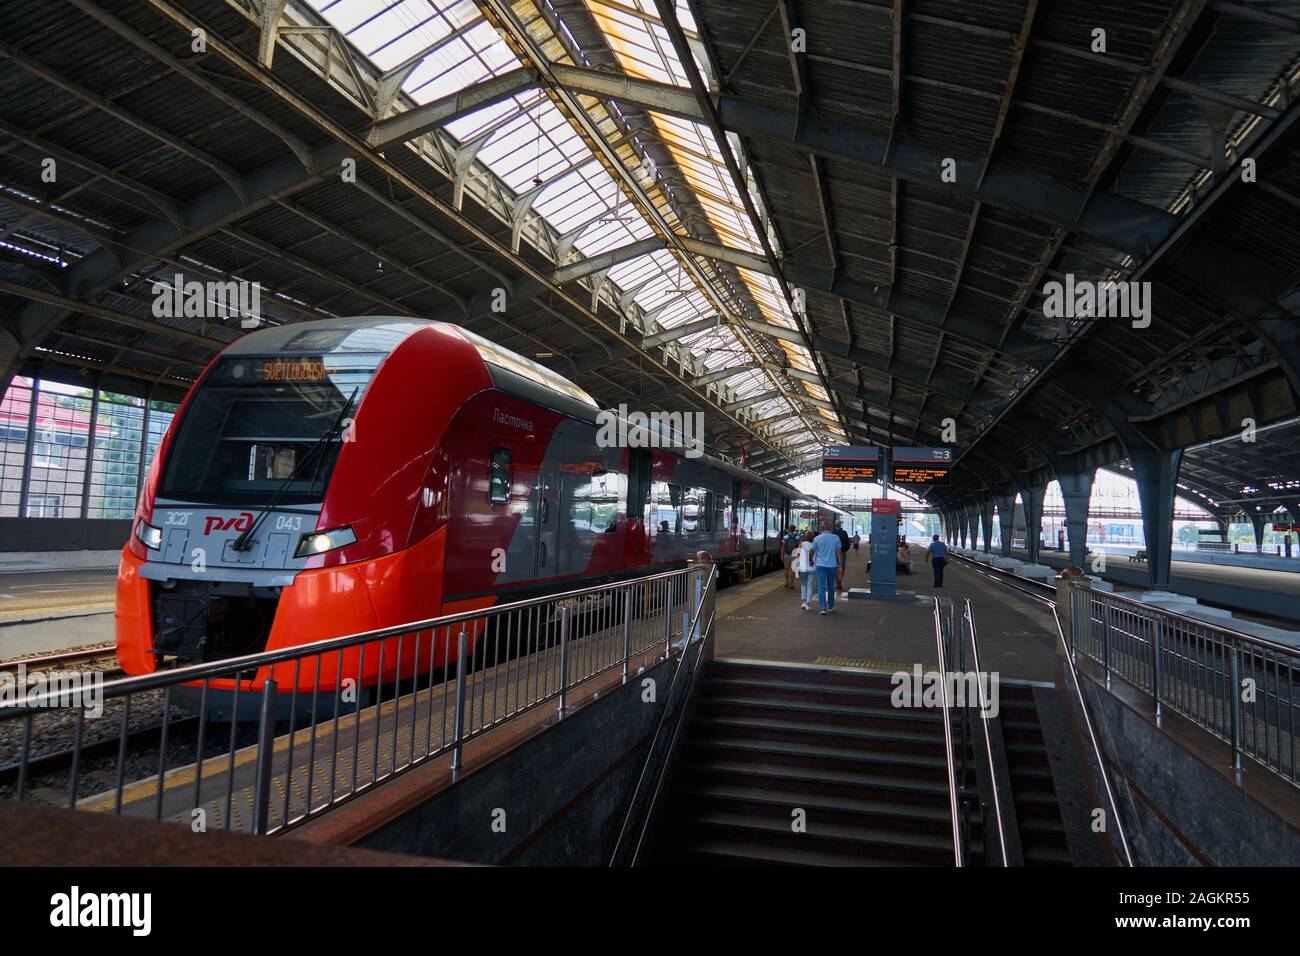 Bahnsteig, Bahnhof Kaliningrad-Passaschirski, Kaliningrad, ehemaliges Königsberg, Oblast Kaliningrad, Russland Stock Photo